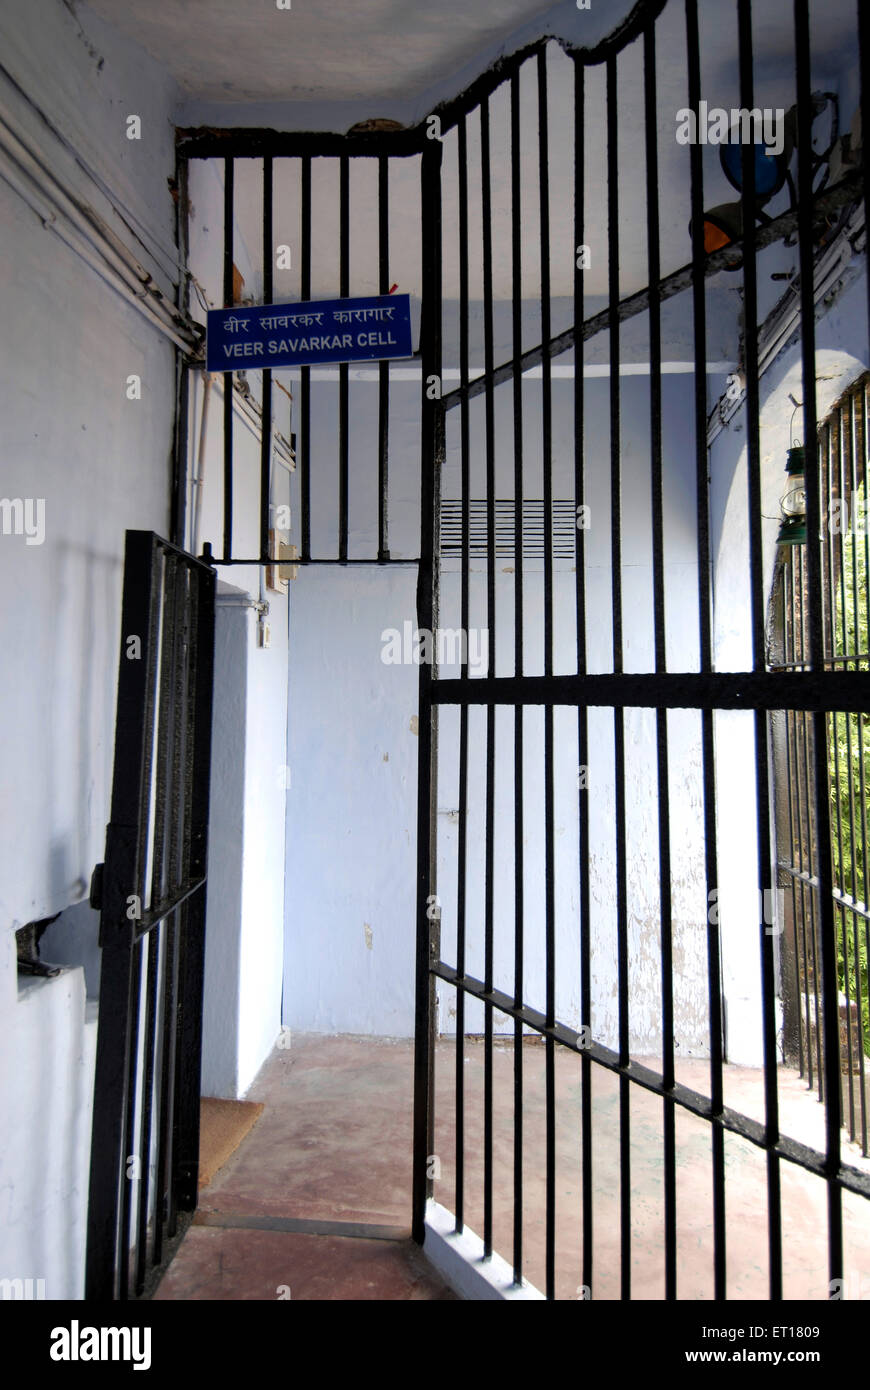 Veer Savarkar cellule de prison cellulaire ; Port Blair ; Îles Andaman du Sud ; baie du Bengale ; Inde Octobre 2008 Banque D'Images